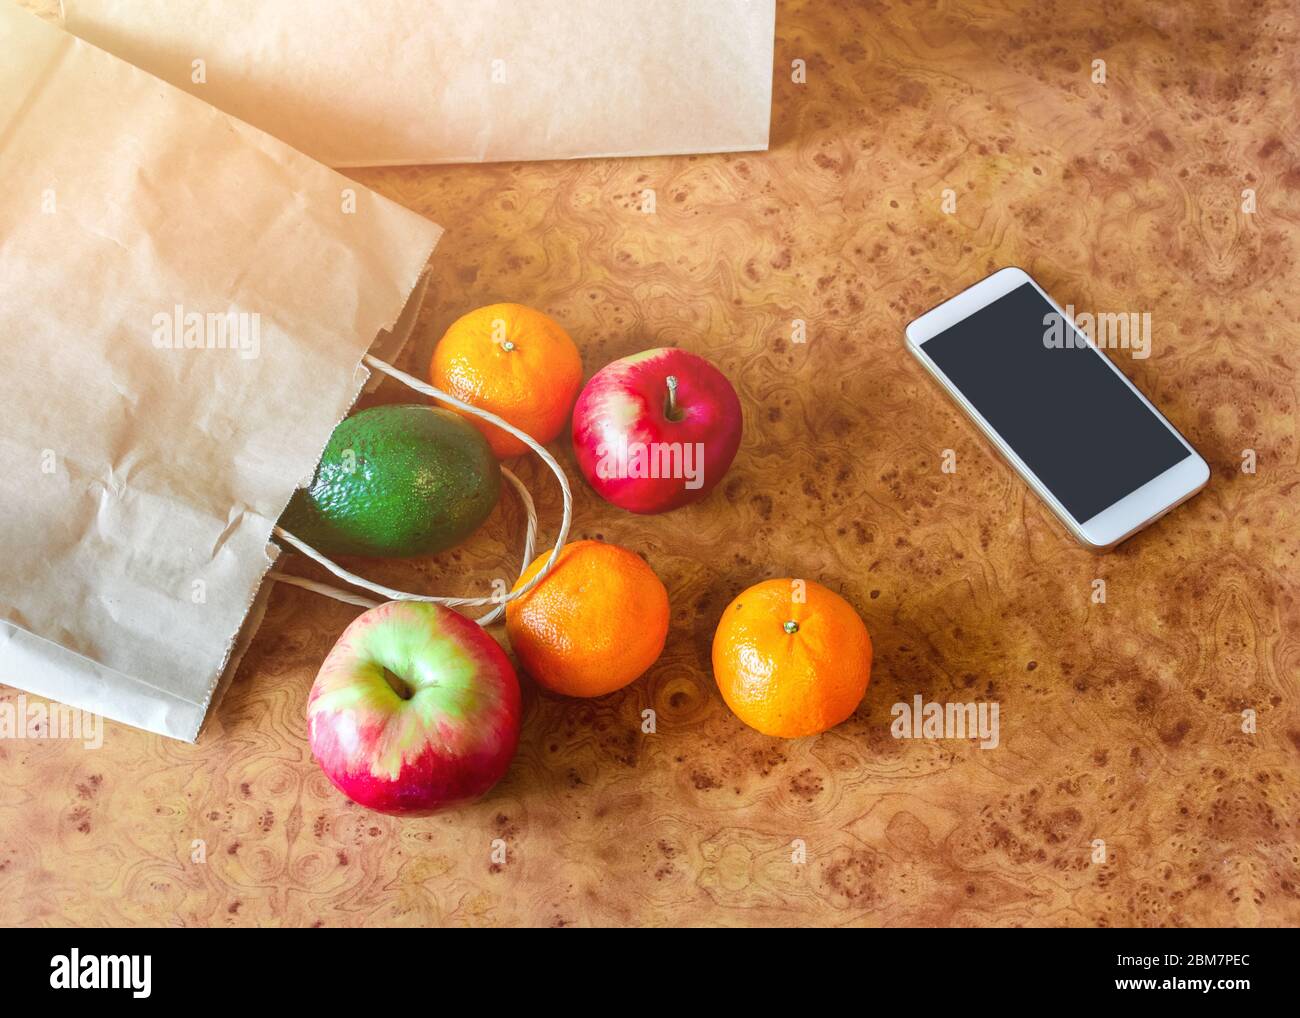 Sacchetti di carta, verdure fresche e frutta accanto al telefono cellulare sul tavolo da cucina. Acquisto online e consegna senza contatto. Foto Stock